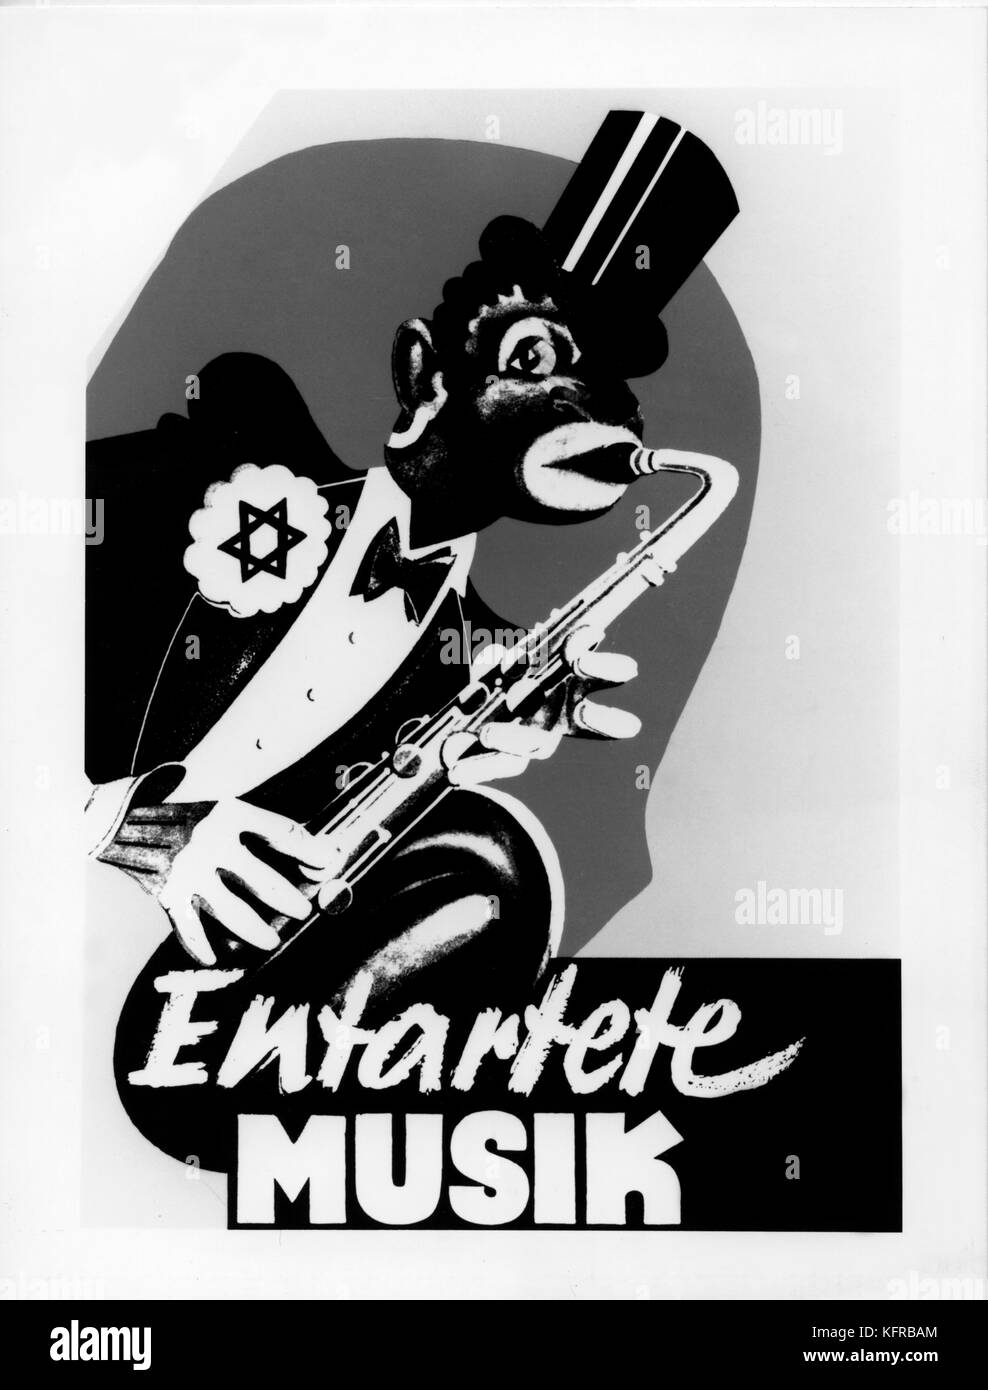 Affiche de propagande nazie pour Entartete Musik exposition montrant stéréotype caricature d'homme noir à jouer du saxophone. Exposition de Düsseldorf, 1938. Artiste inconnu Banque D'Images